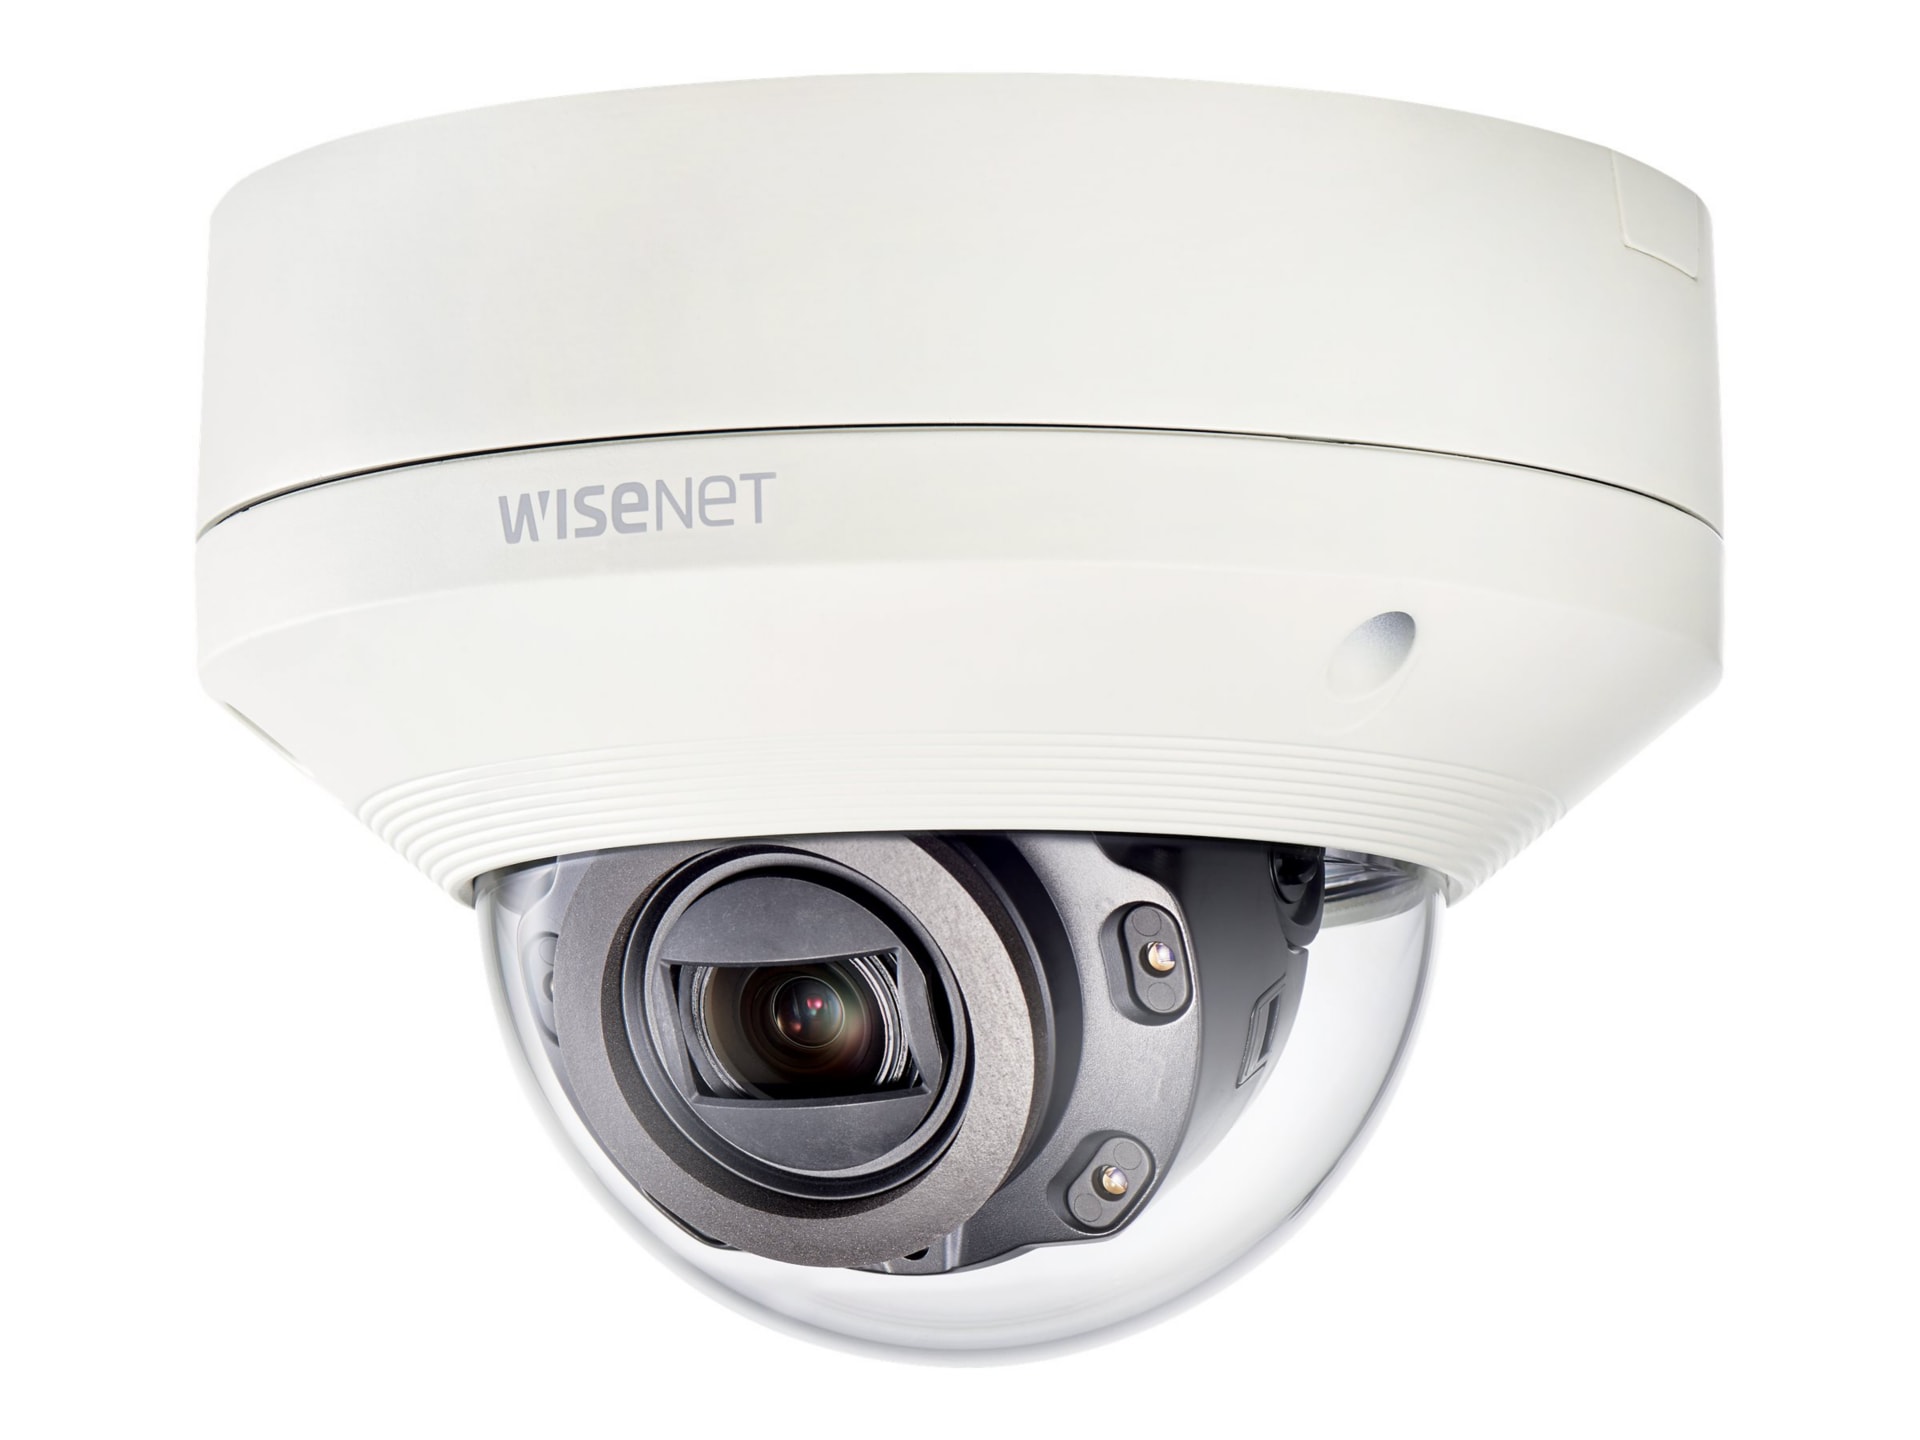 Samsung WiseNet X XNV-6080R - network surveillance camera